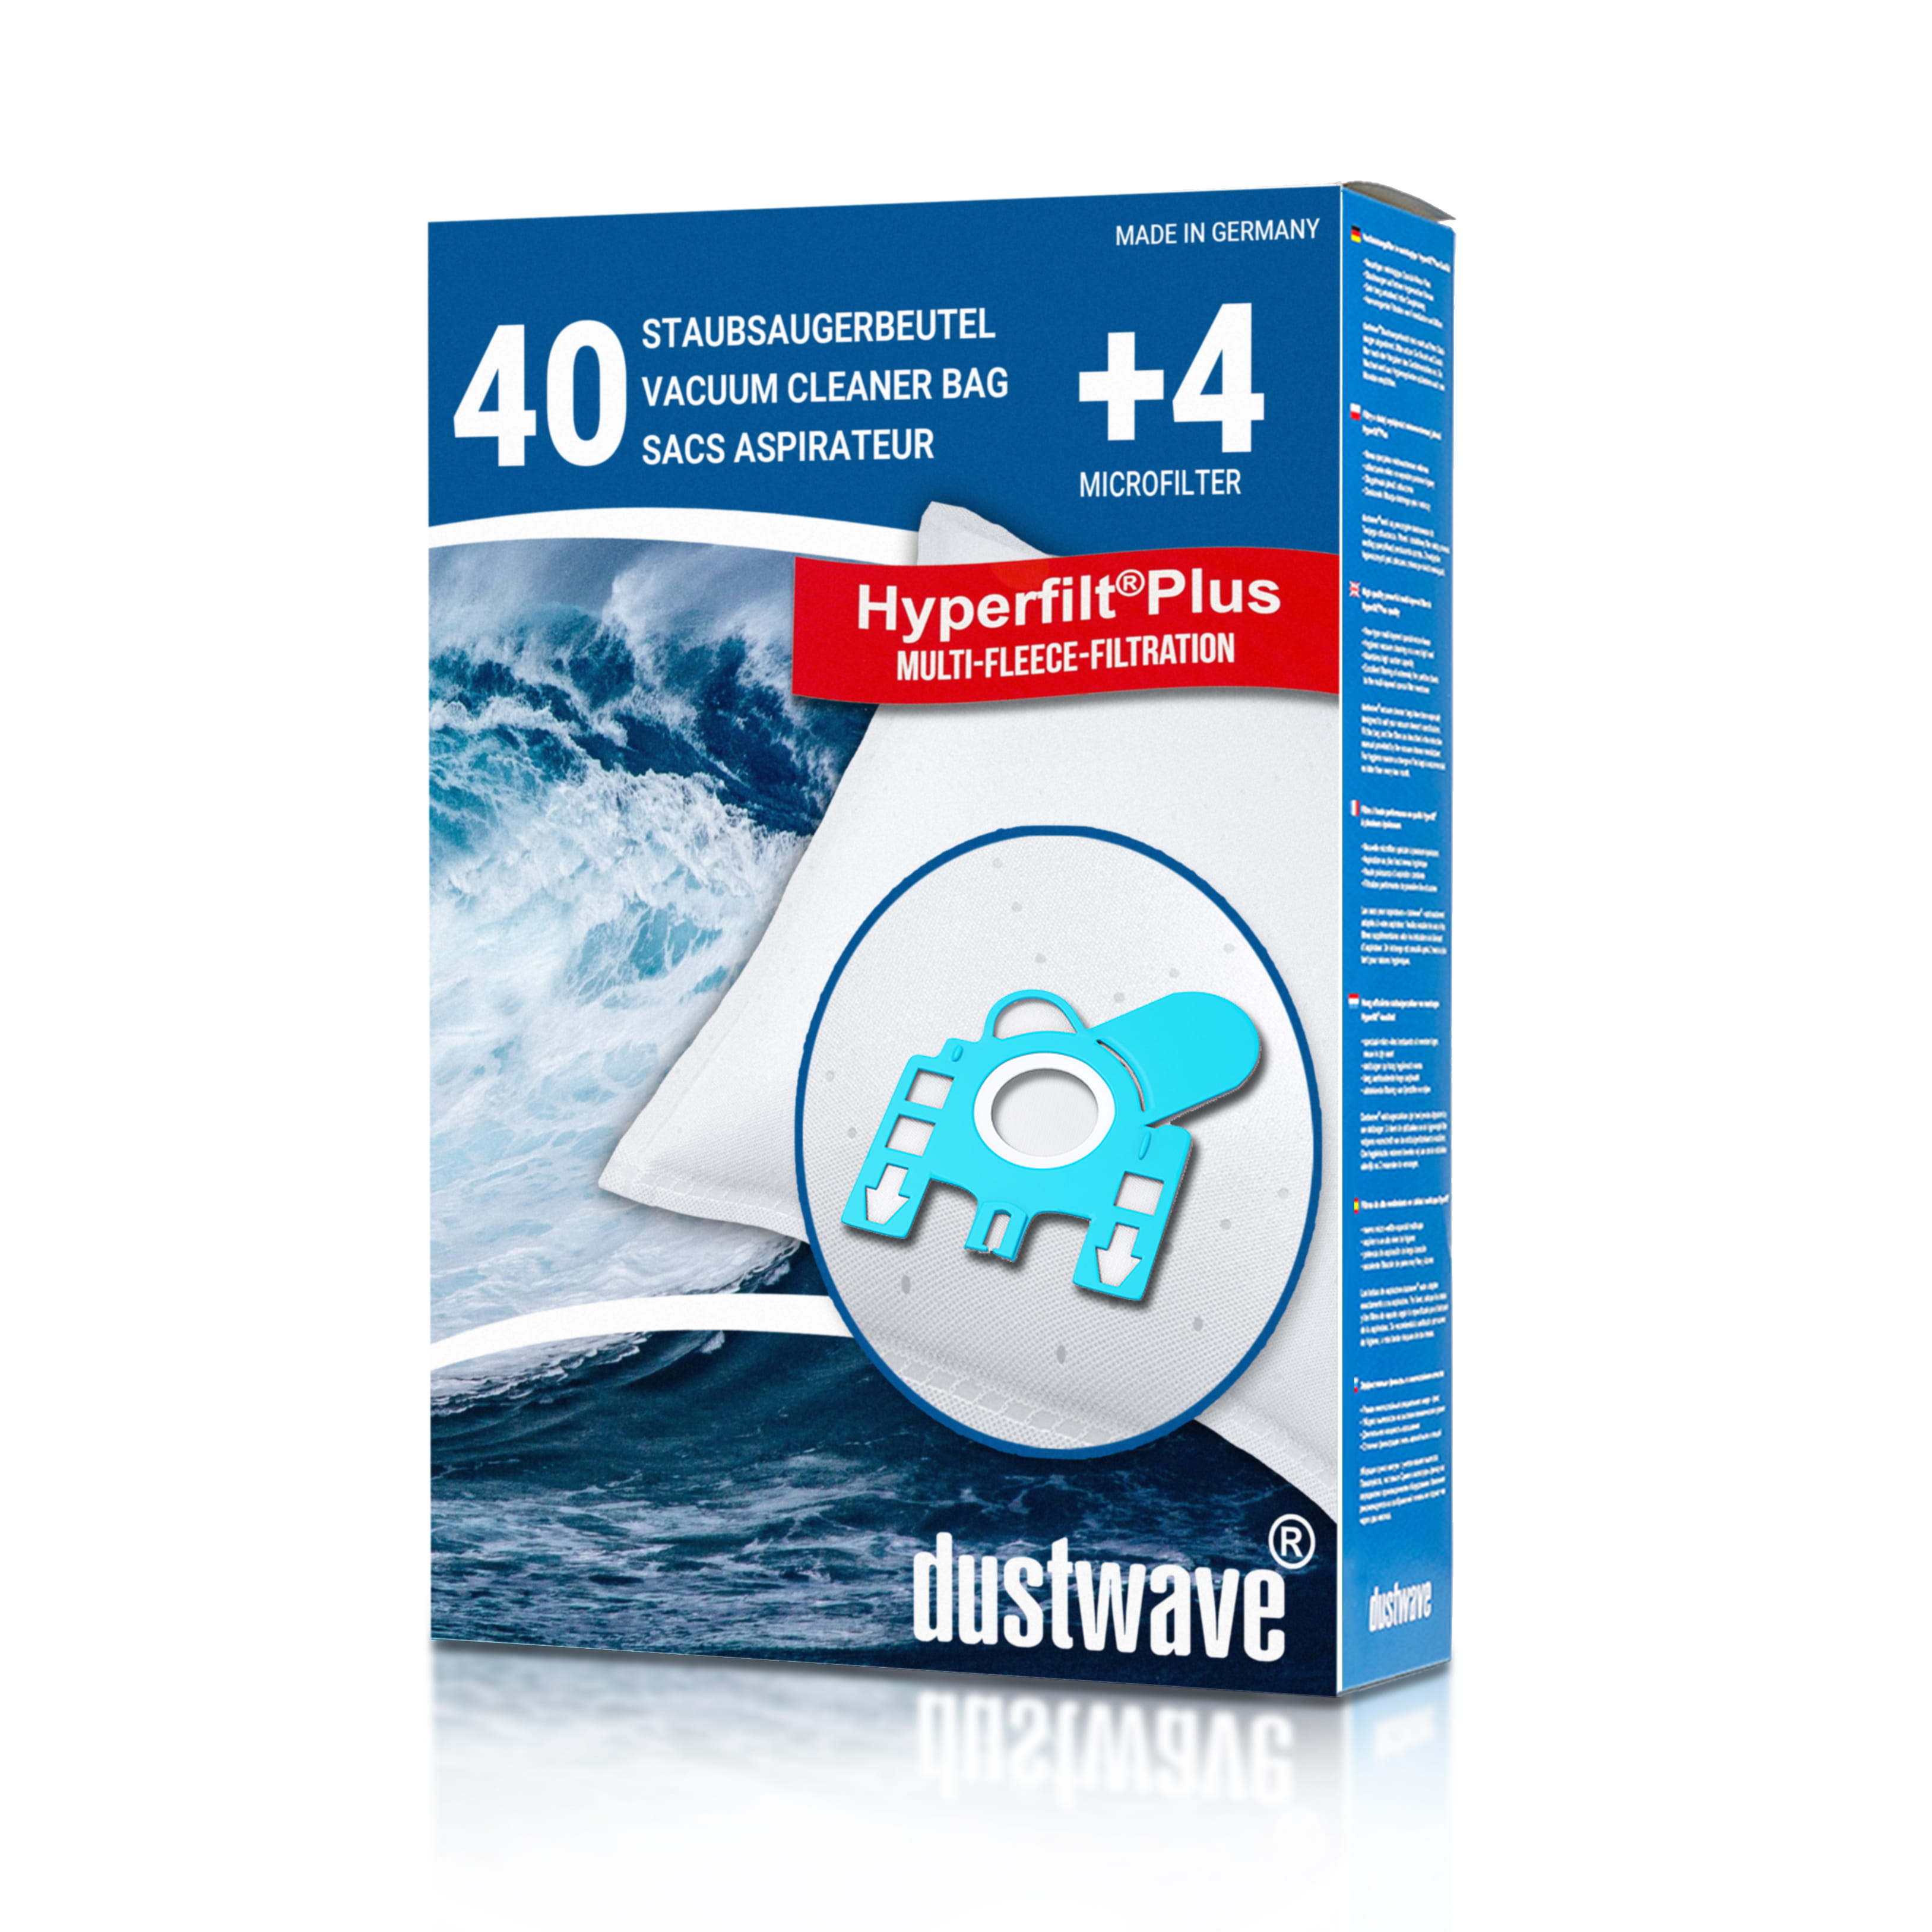 Dustwave® 40 Staubsaugerbeutel für Hoover 39000439 - hocheffizient, mehrlagiges Mikrovlies mit Hygieneverschluss - Made in Germany